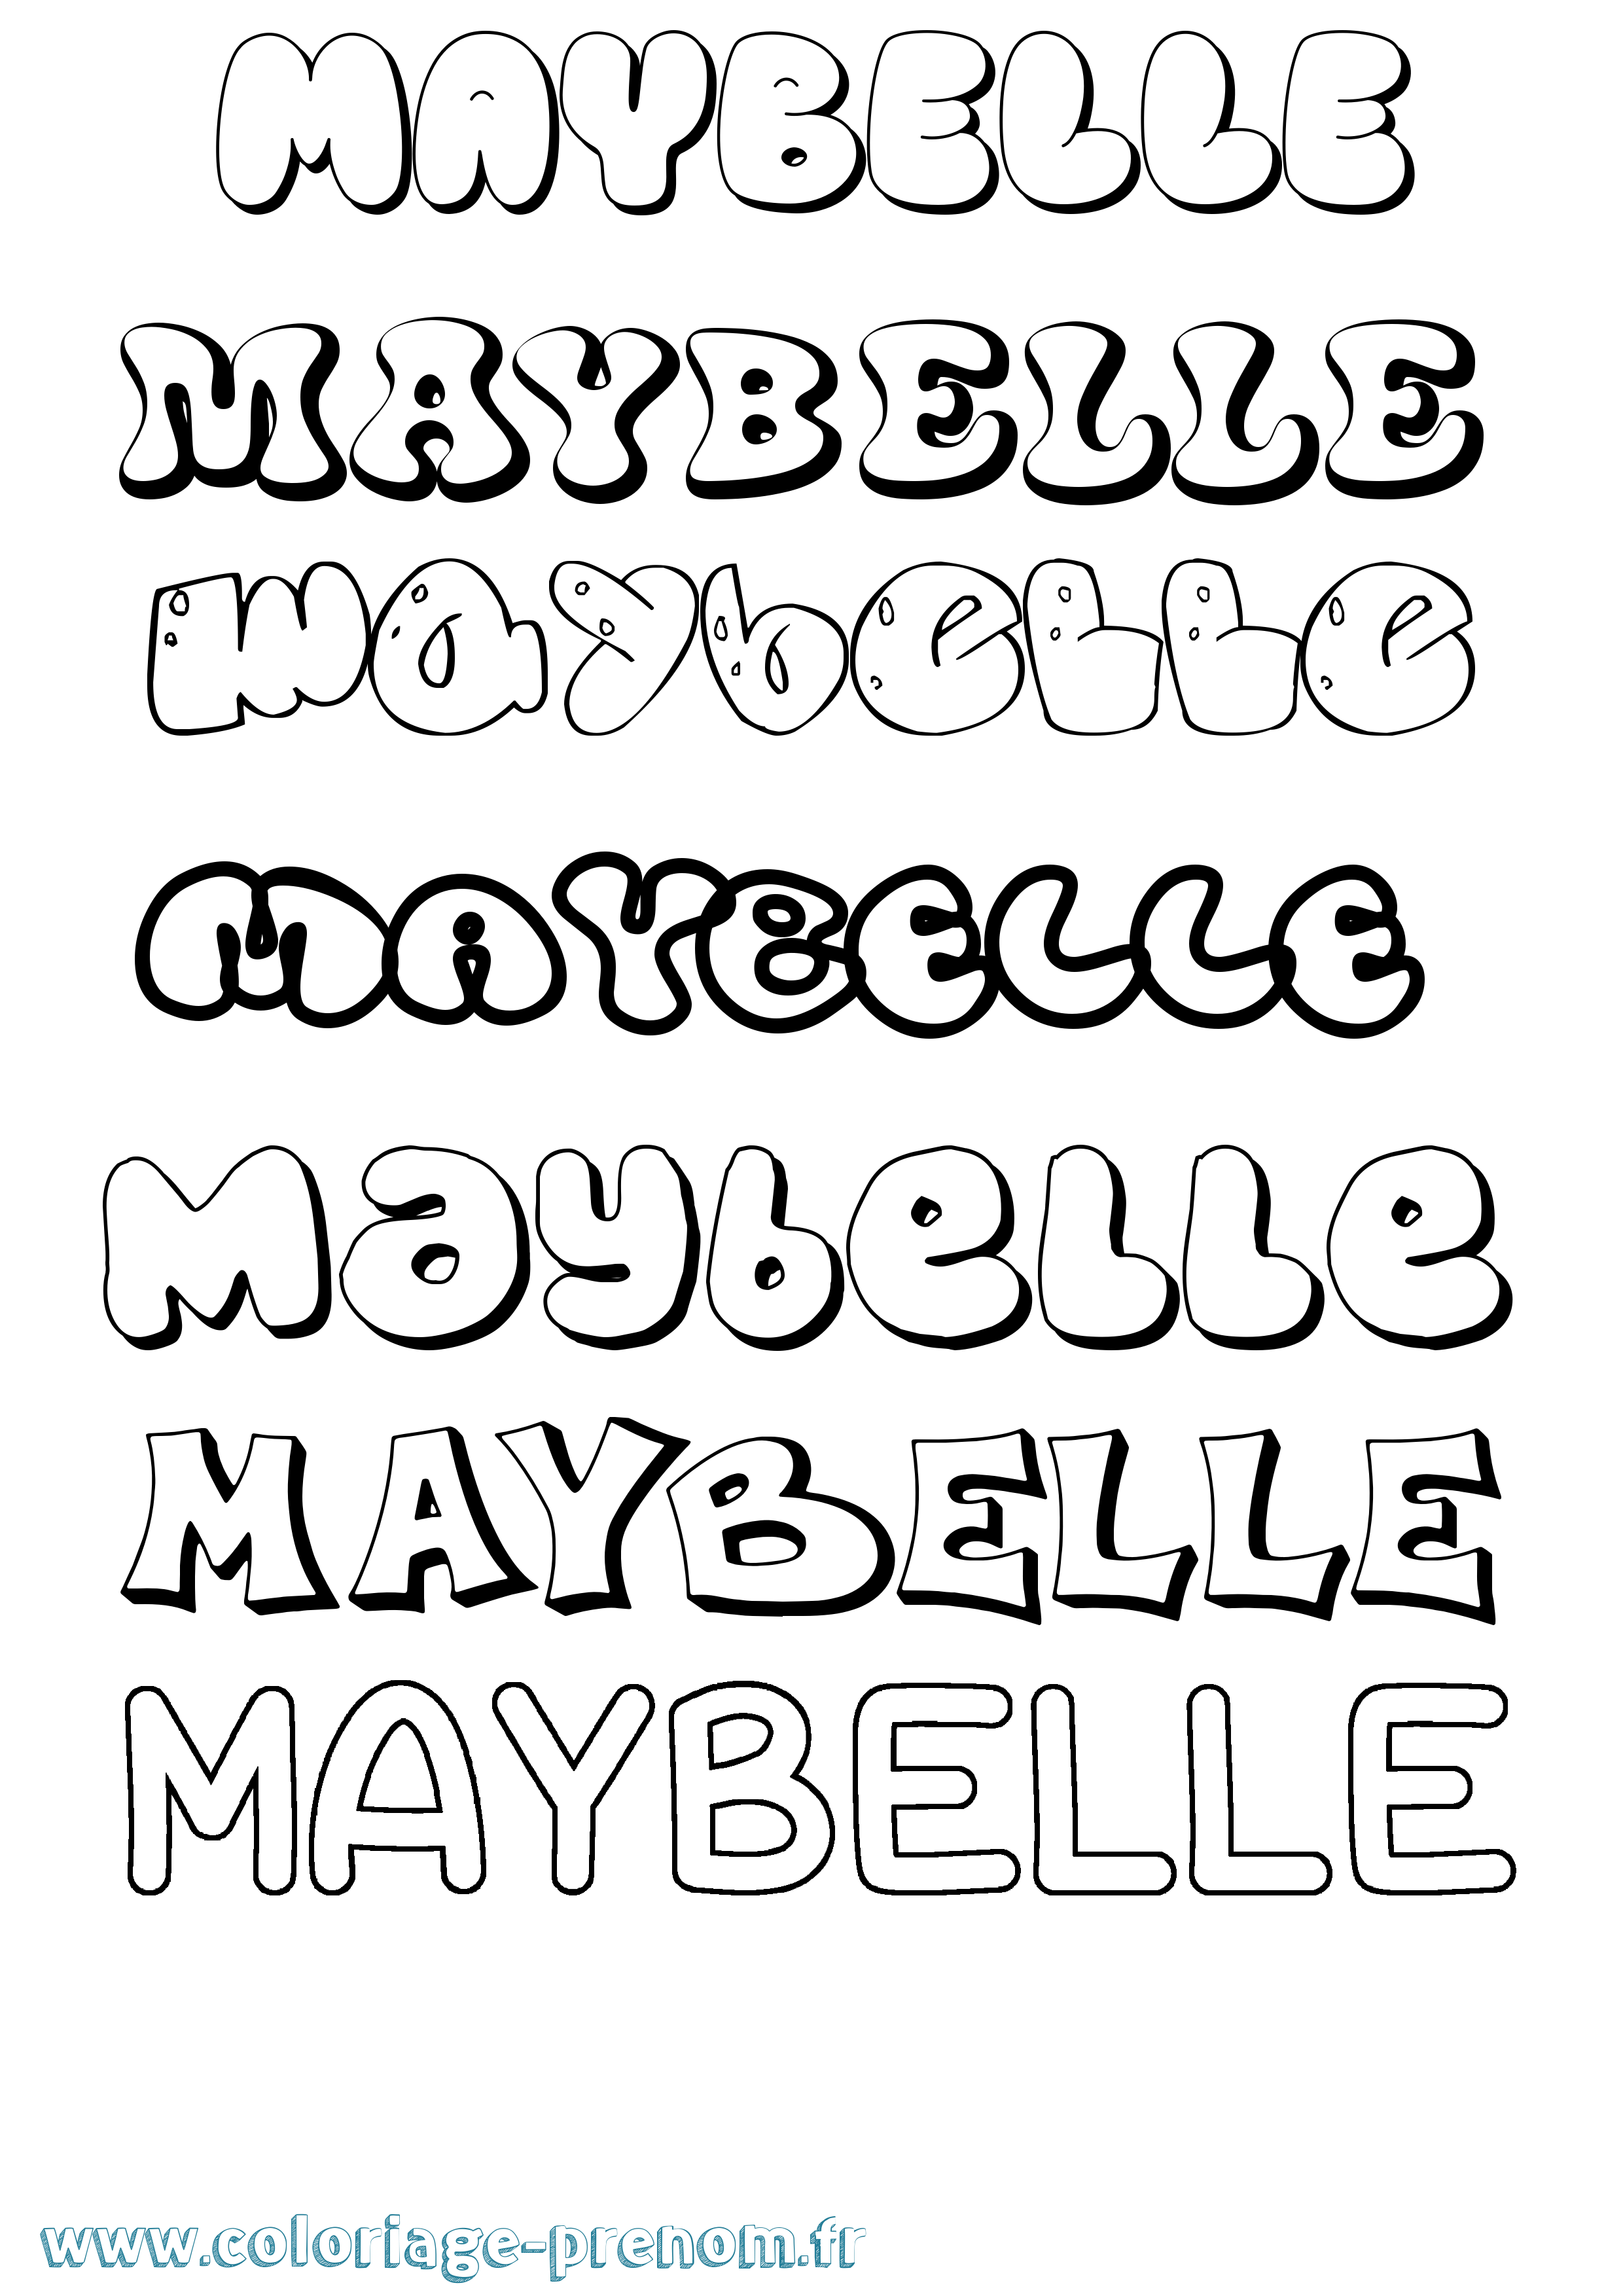 Coloriage prénom Maybelle Bubble